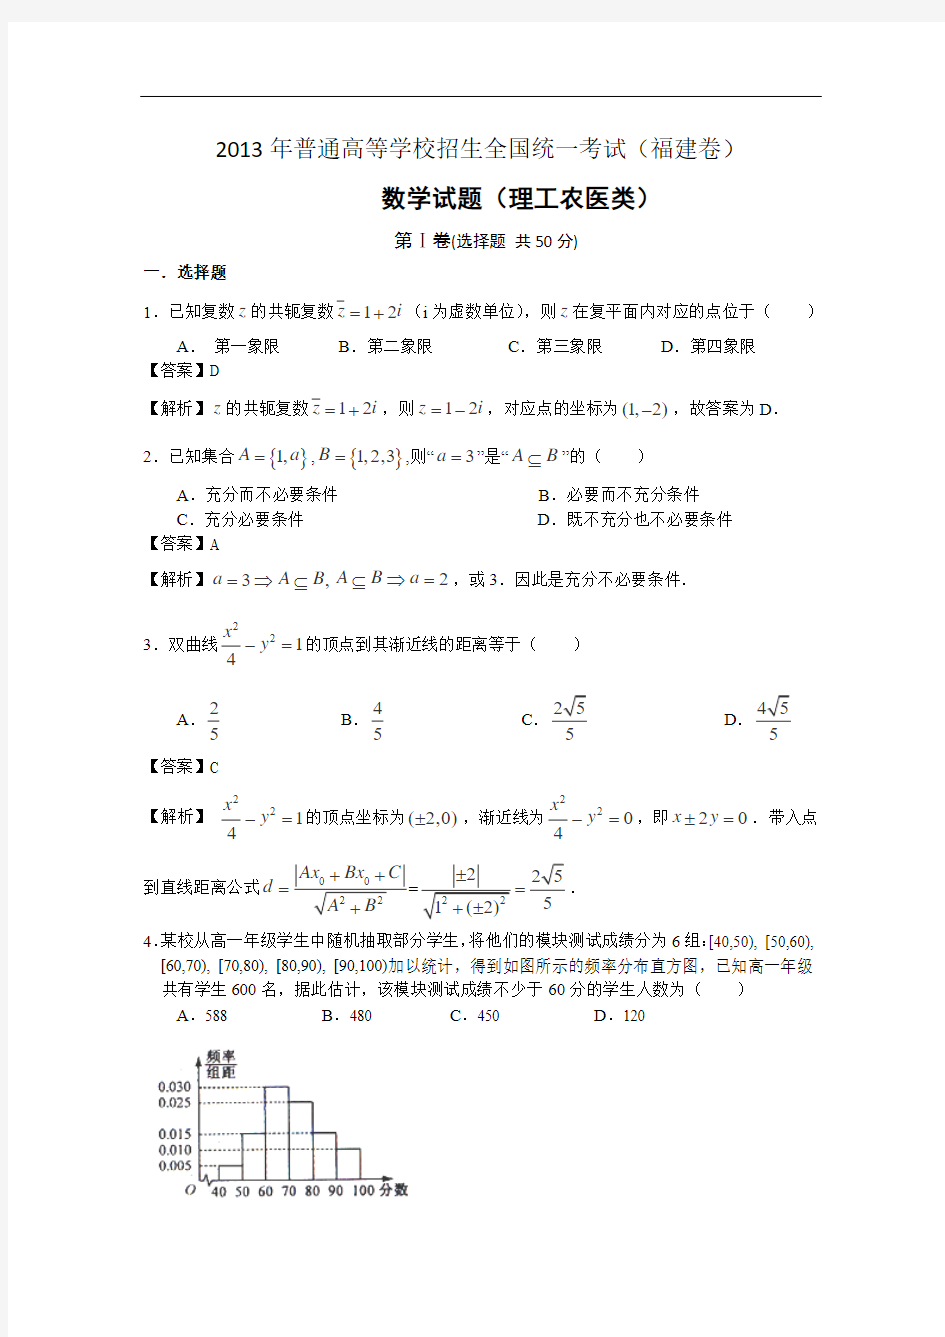 2013年高考真题——理科数学(福建卷)解析版